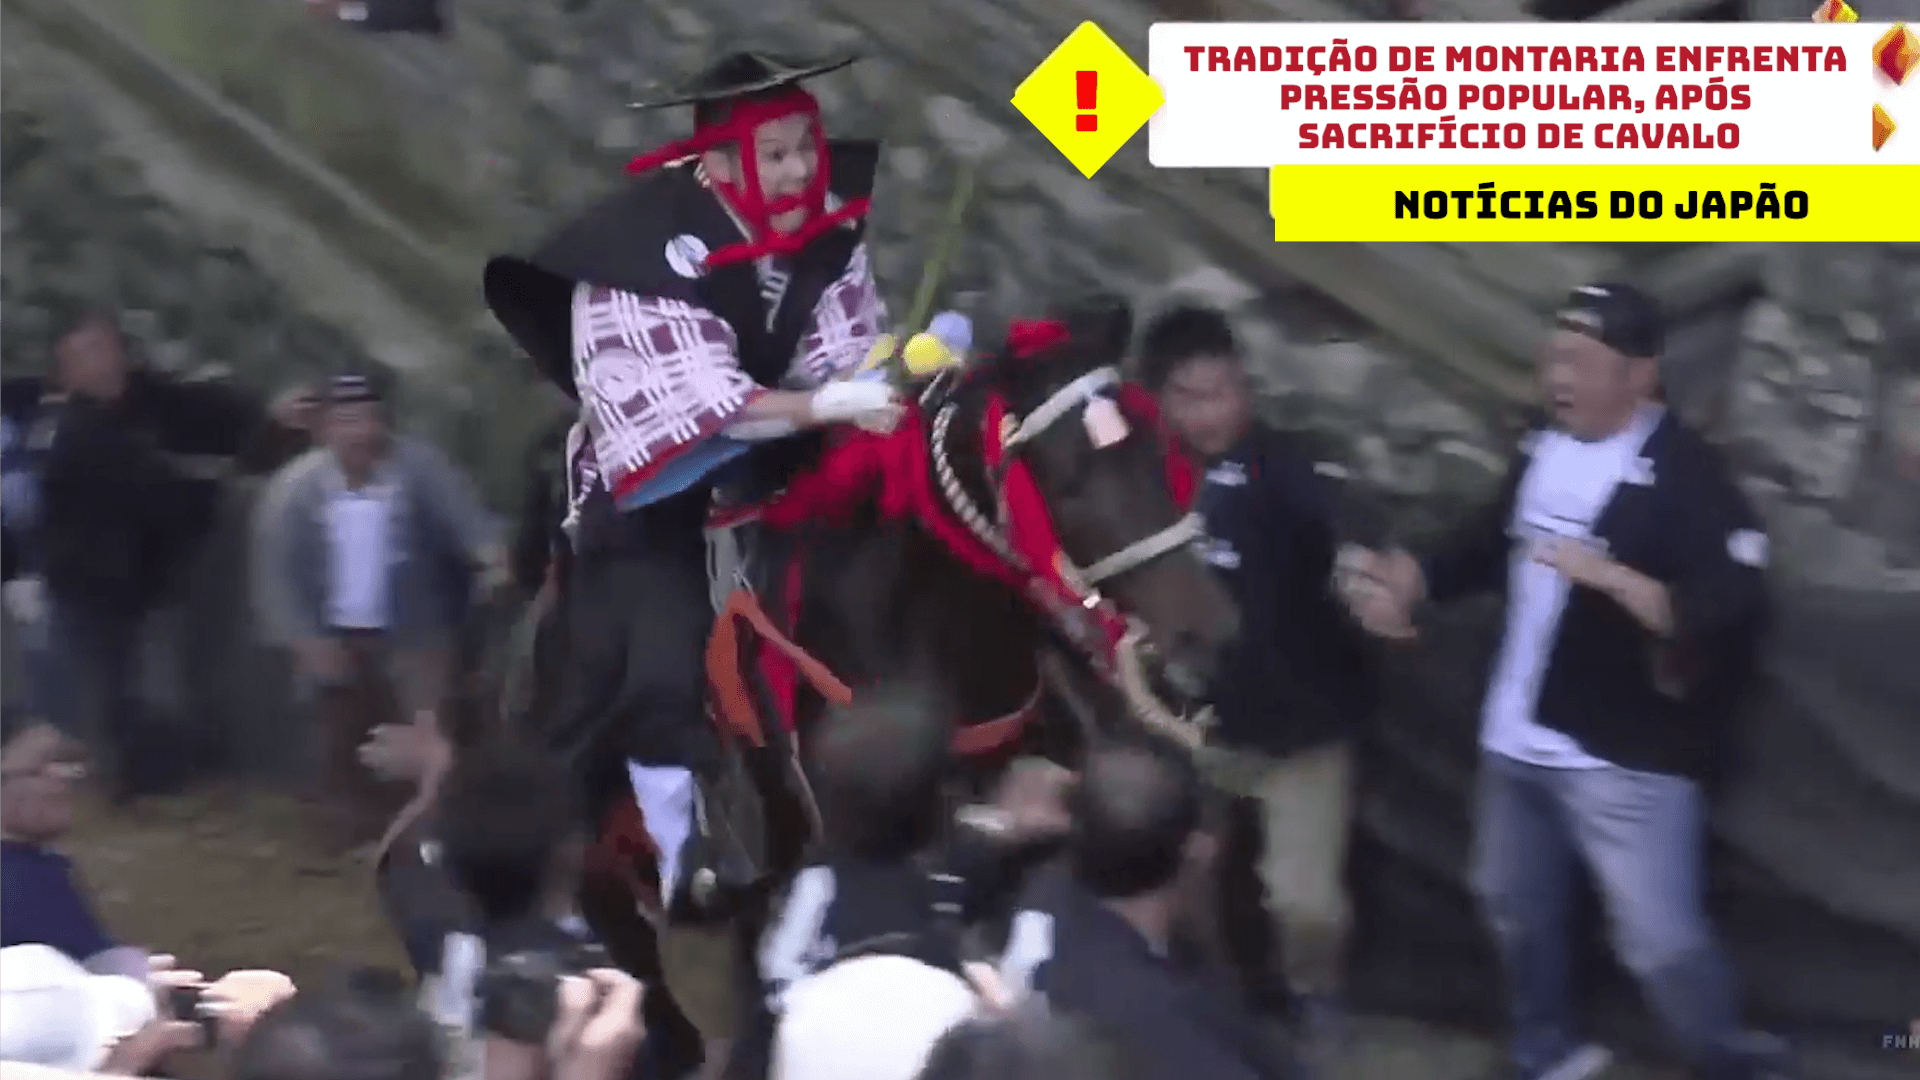 Tradição de montaria enfrenta pressão popular, após sacrifício de cavalo no Japão  